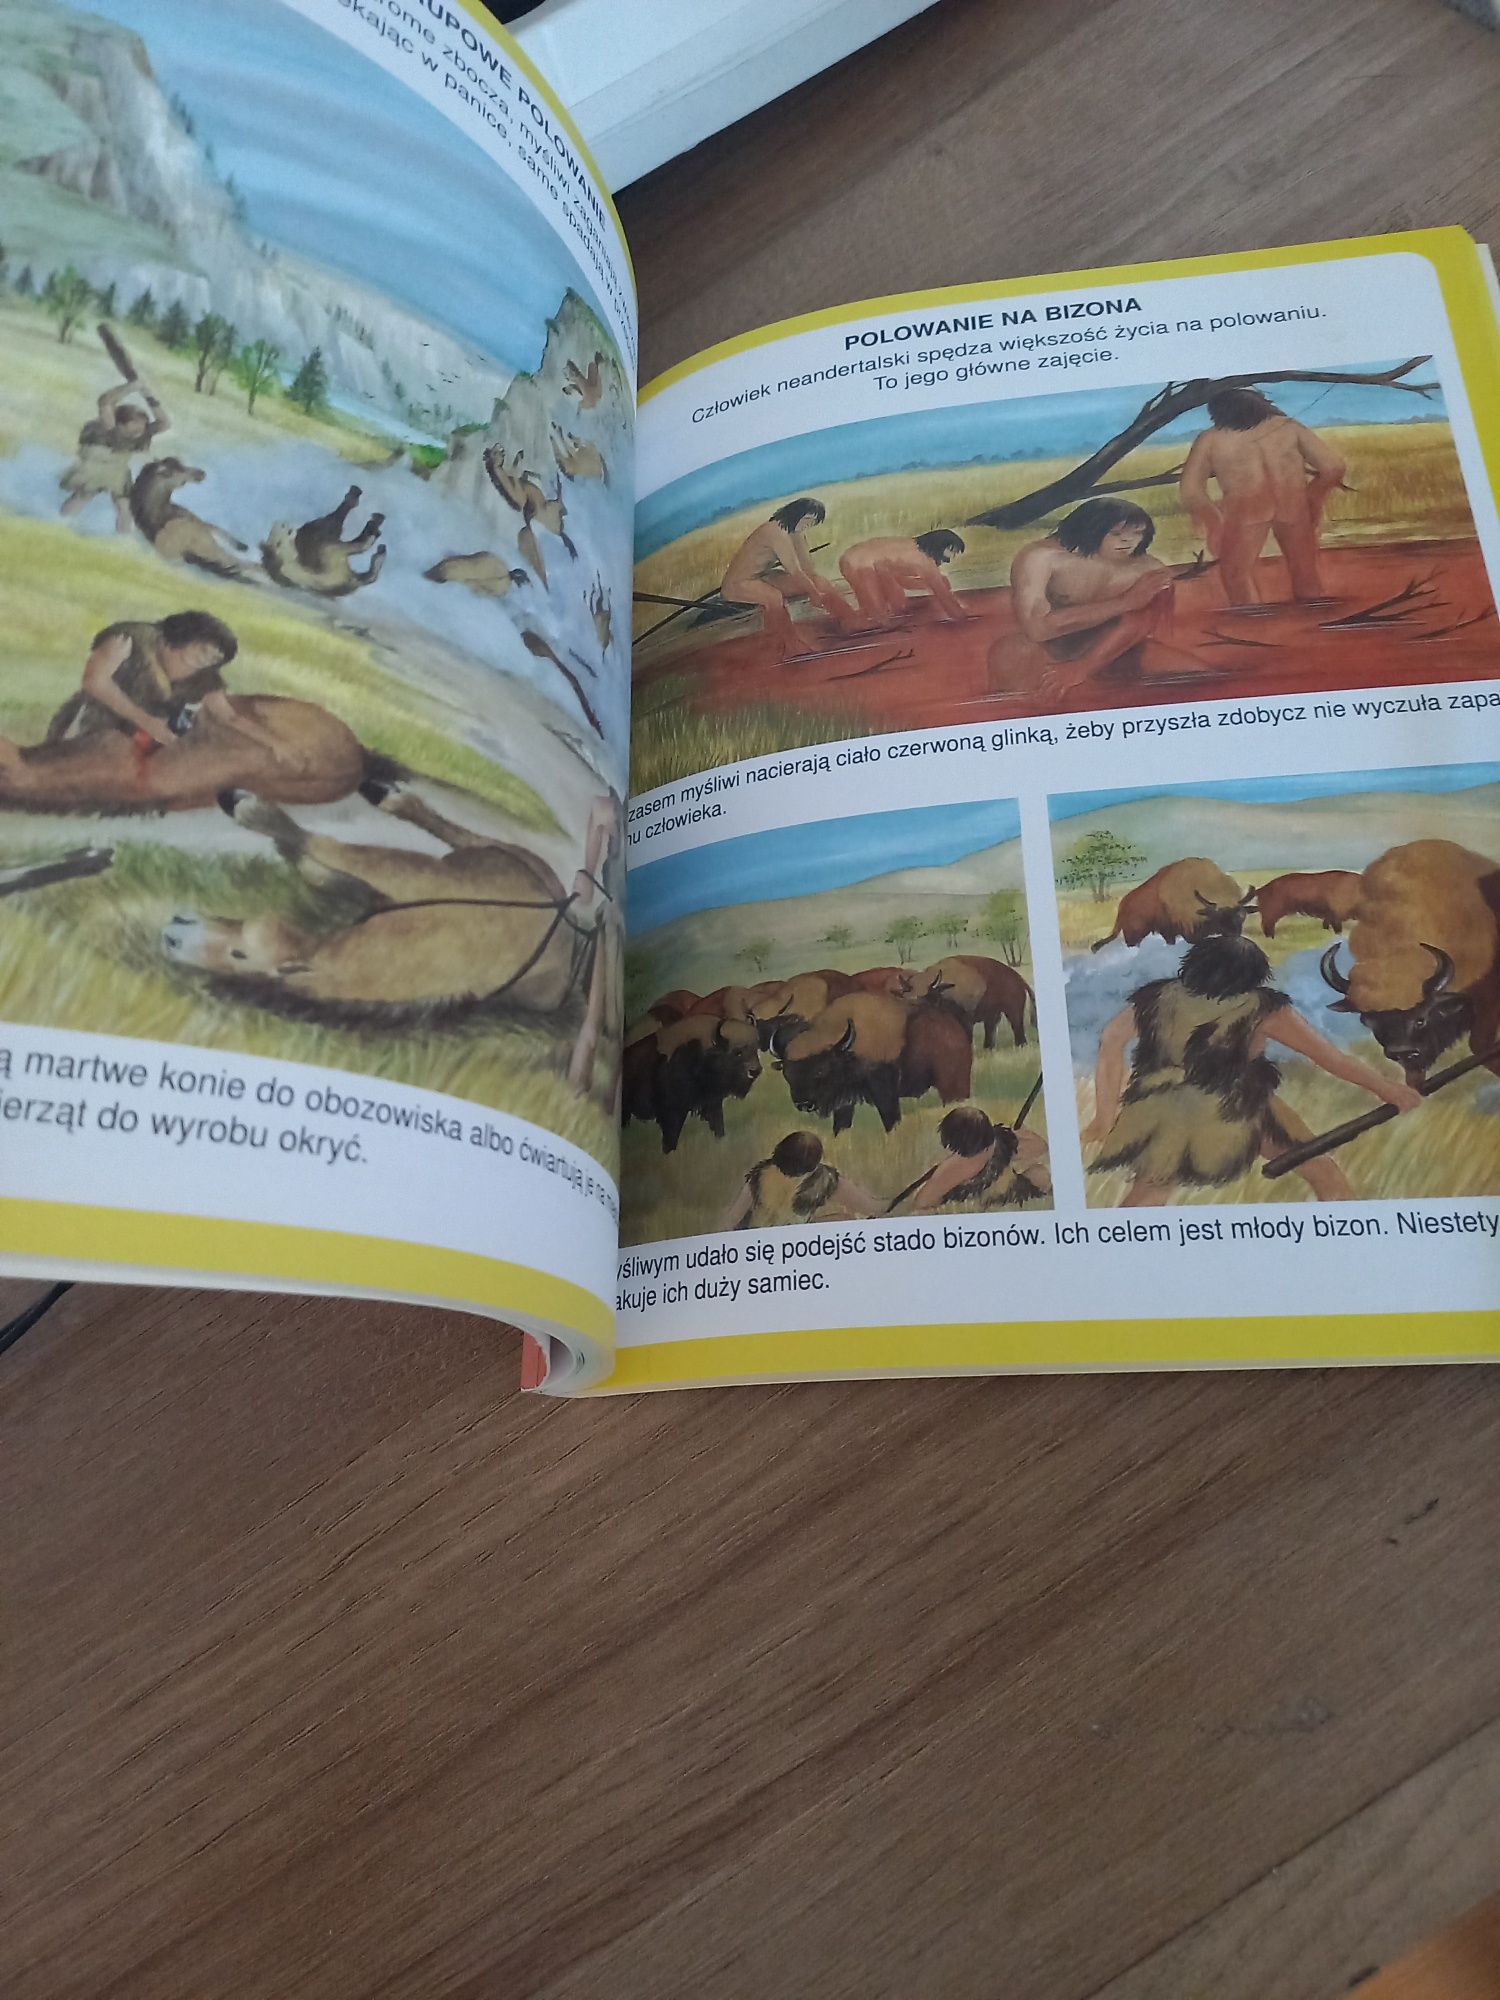 Książka dla dzieci-dinozaury i prehistoria